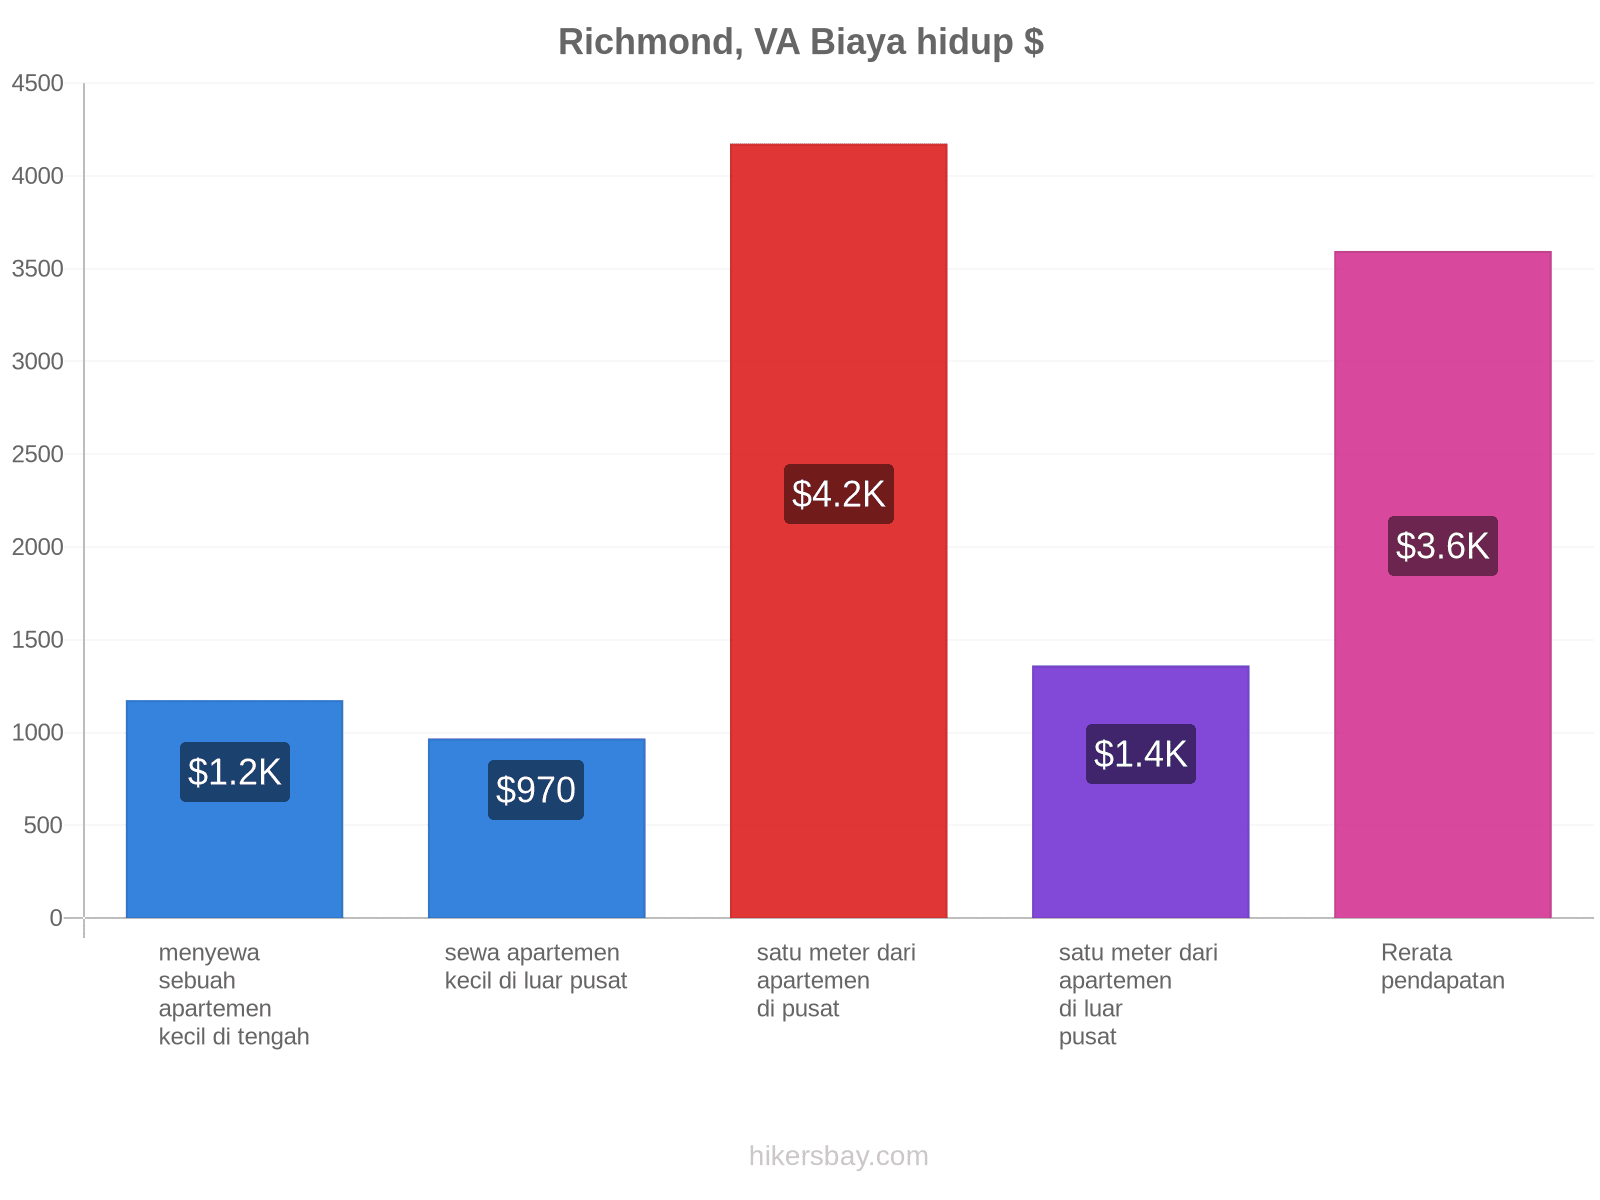 Richmond, VA biaya hidup hikersbay.com